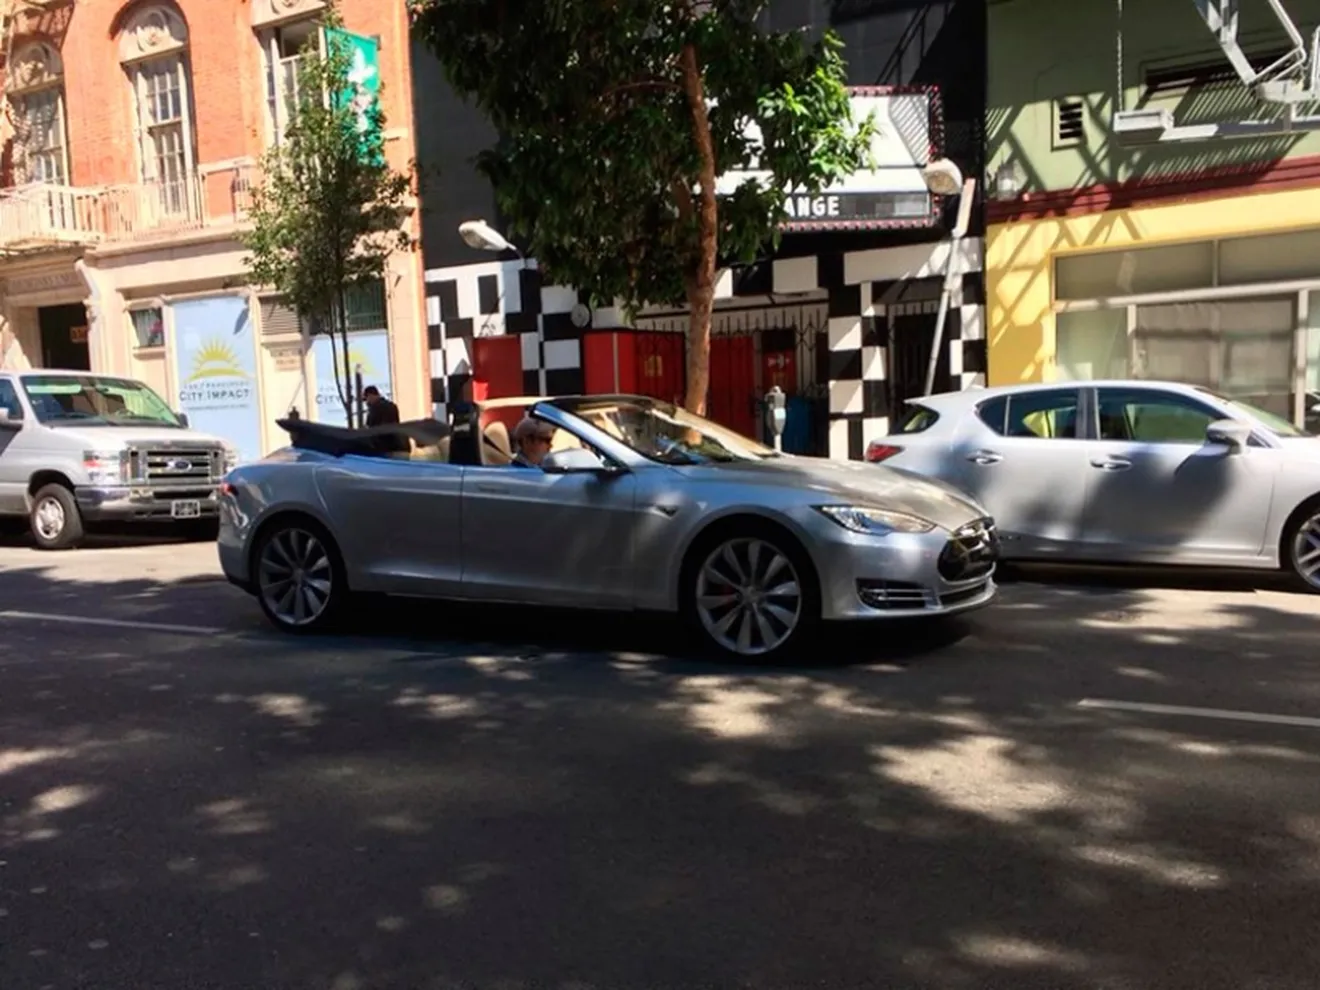 Aparece un Tesla Model S descapotable en California